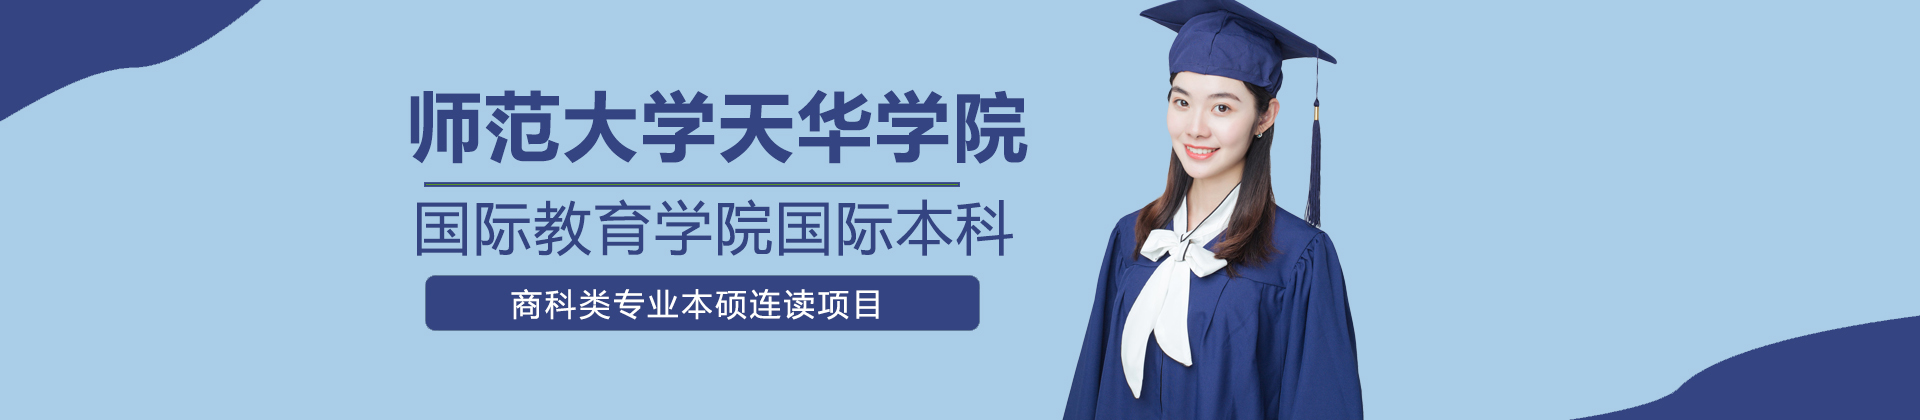 上海师范大学天华学院国际教育学院国际本科